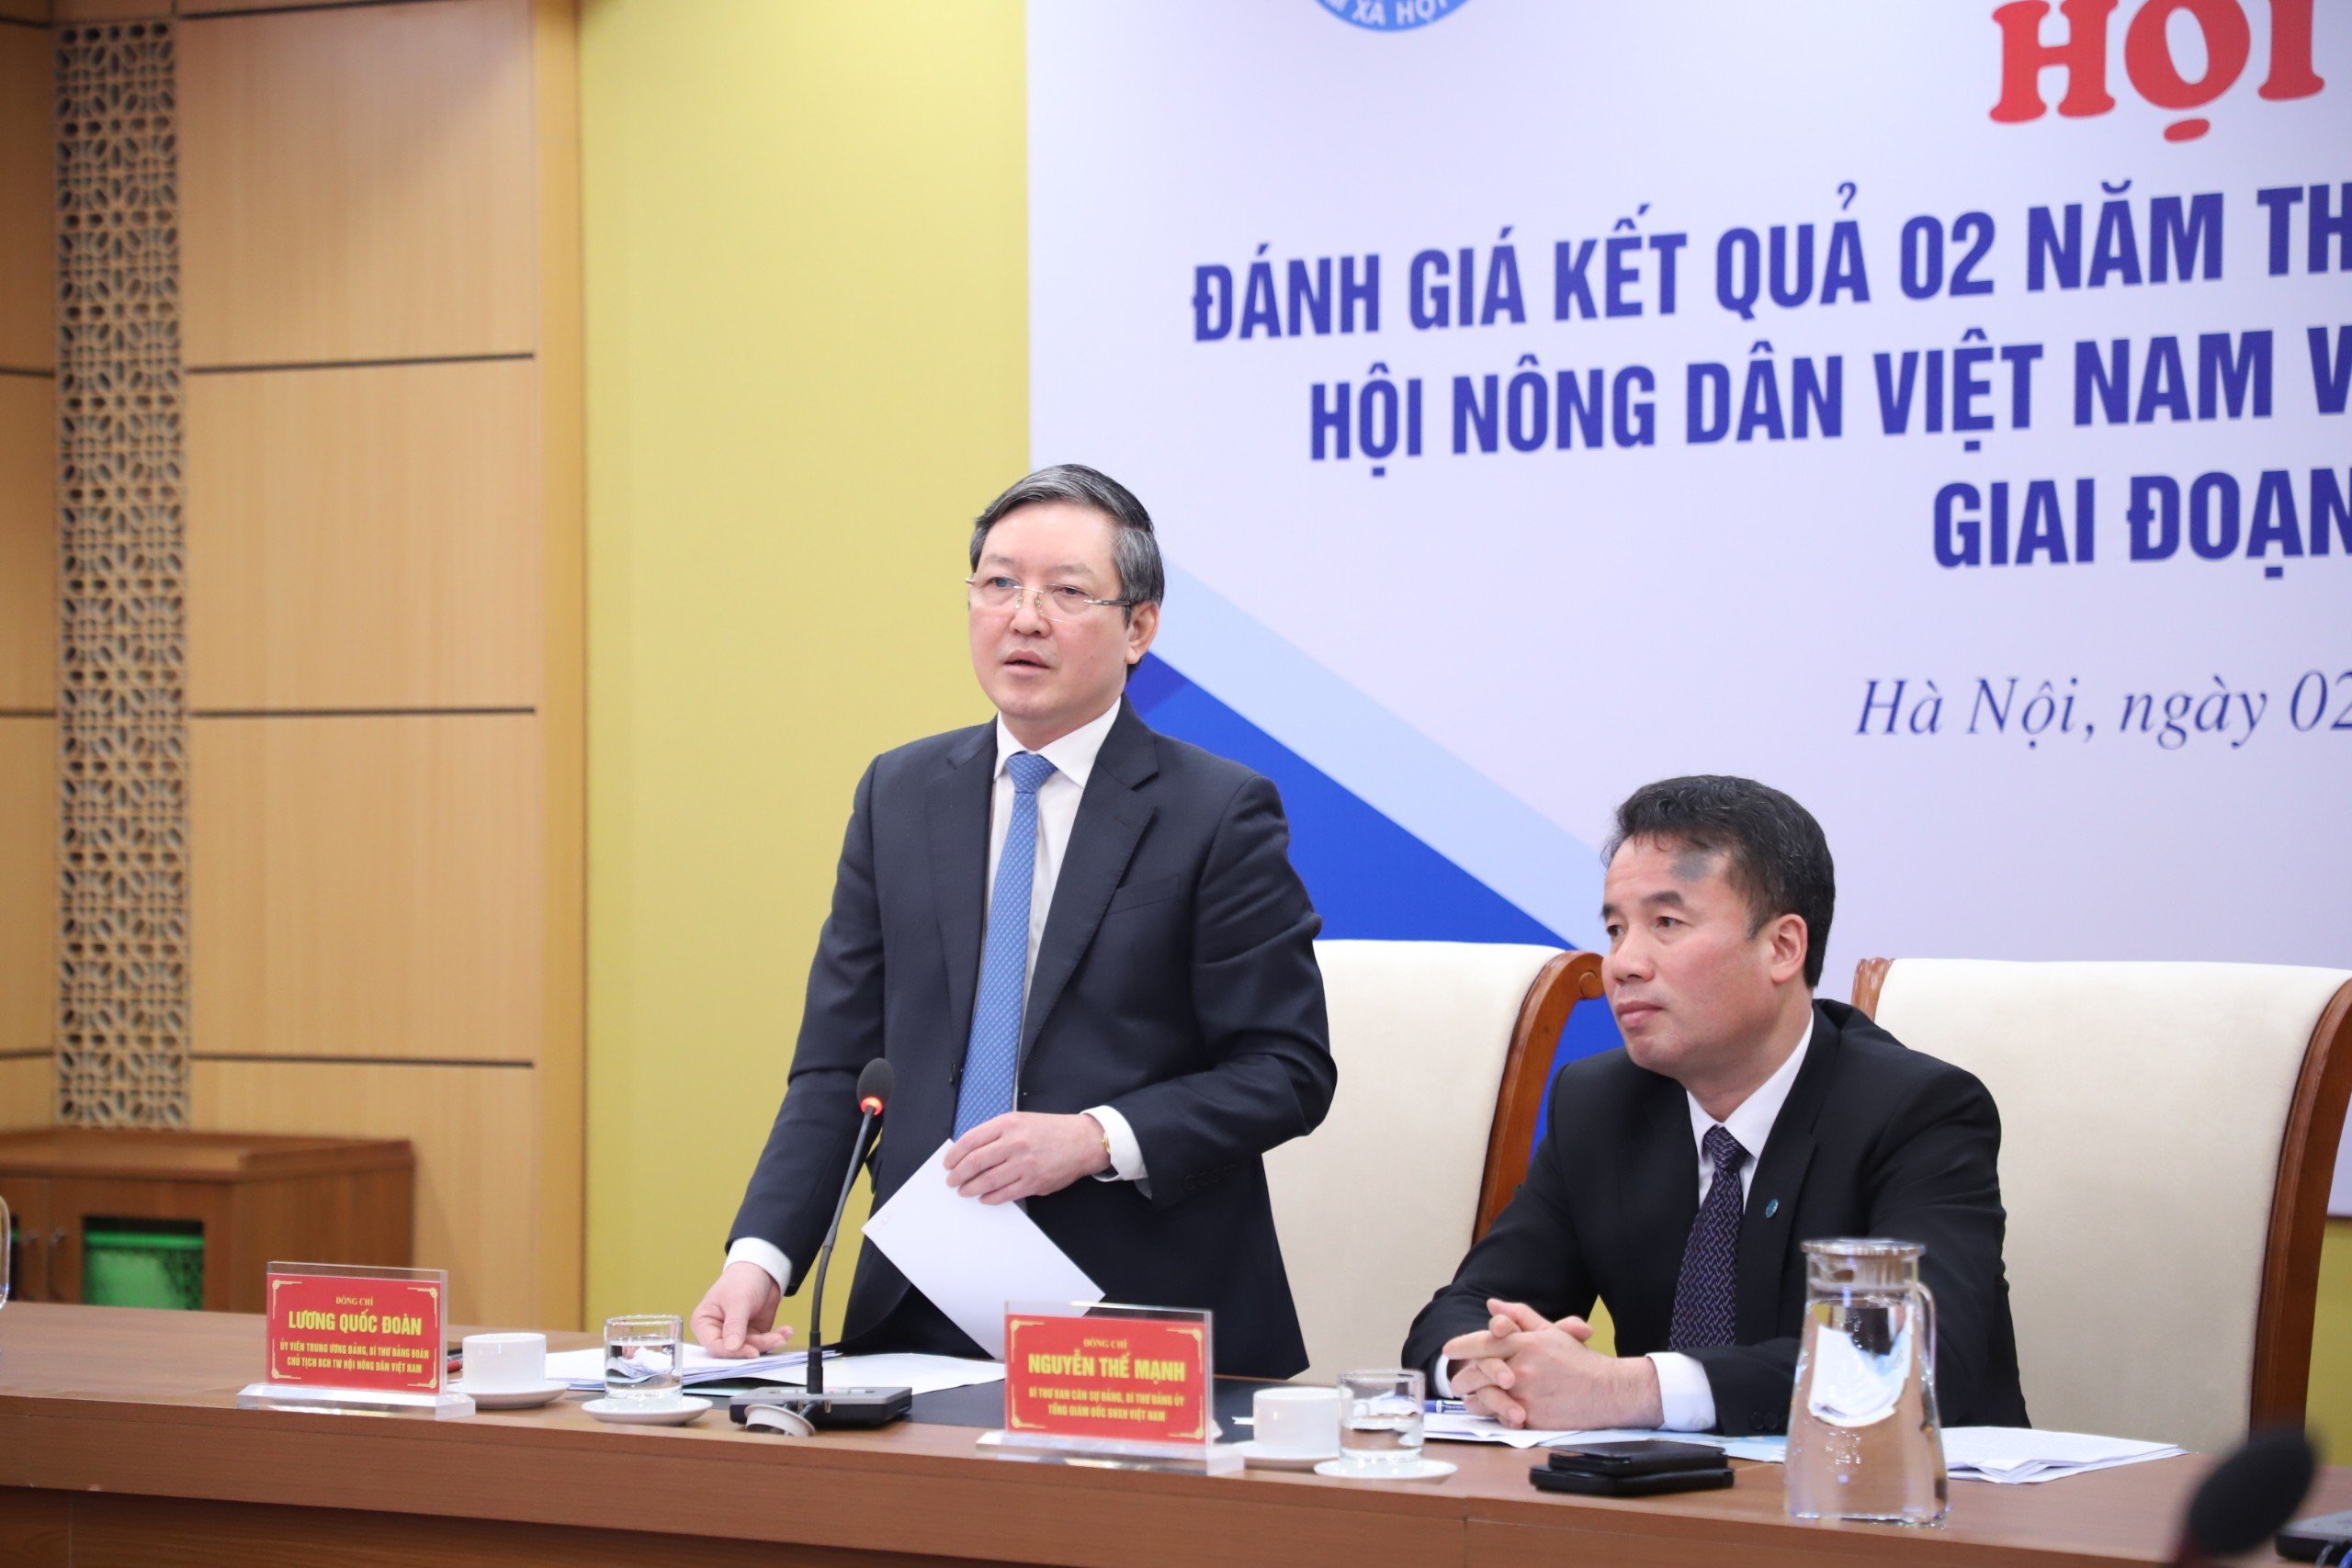 Hội Nông dân Việt Nam, BHXH Việt Nam tổ chức đánh giá kết quả 2 năm thực hiện quy chế phối hợp- Ảnh 2.